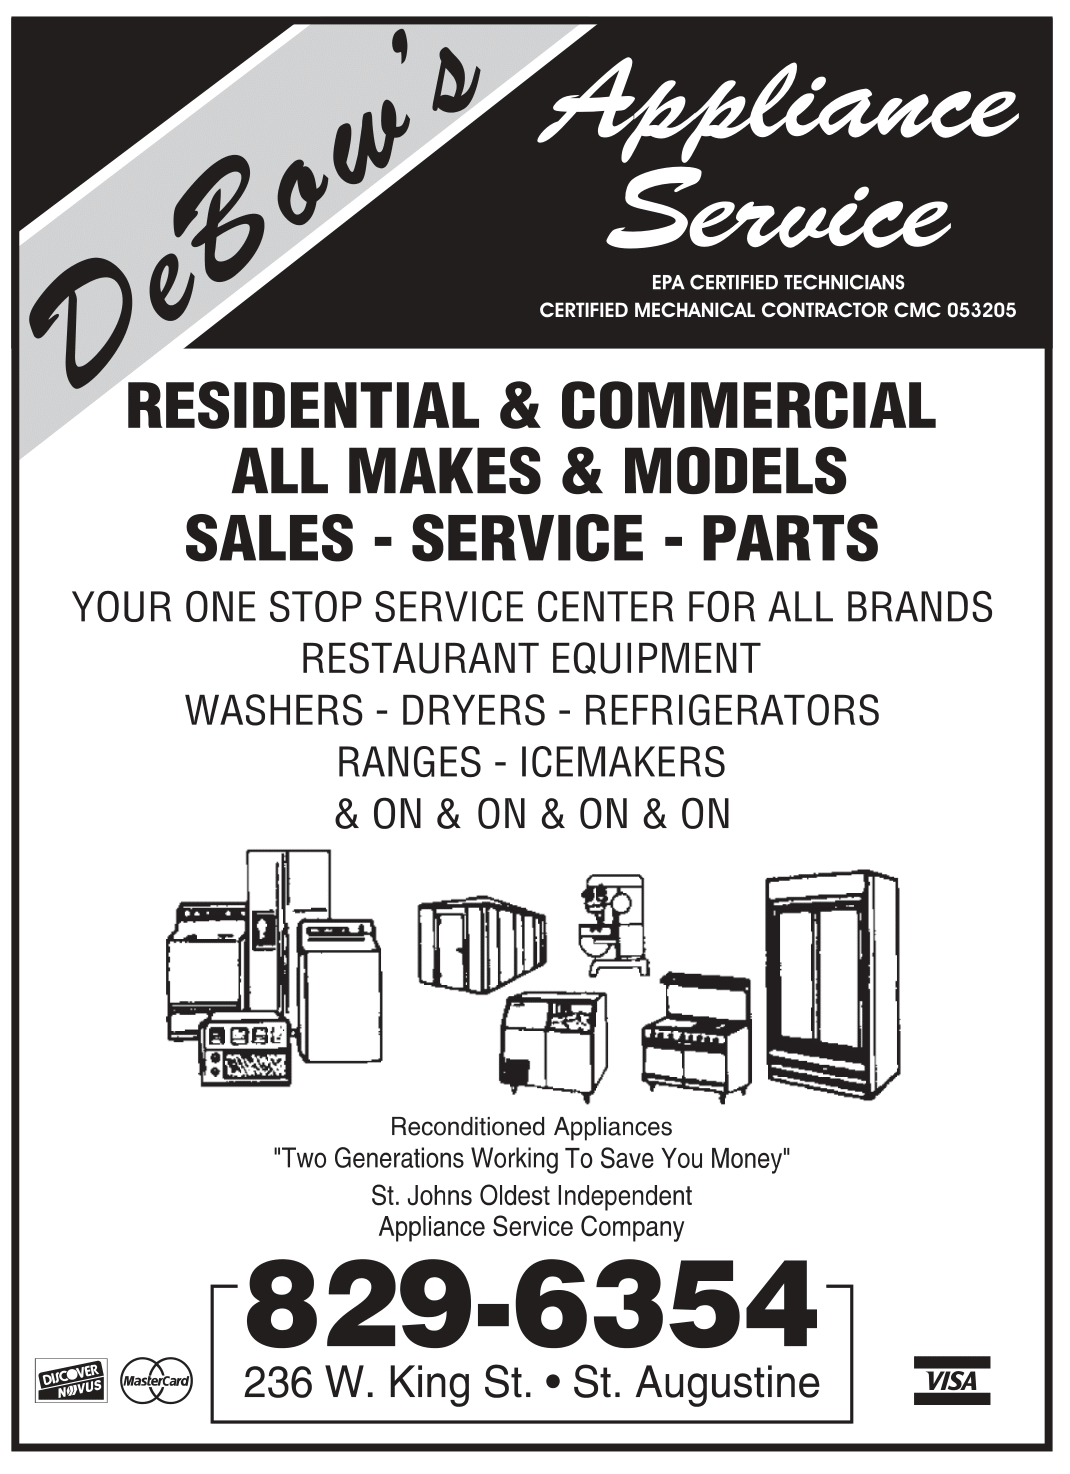 Debows Appliance Service Flier — St. Augustine, FL — DeBow's Appliance Service